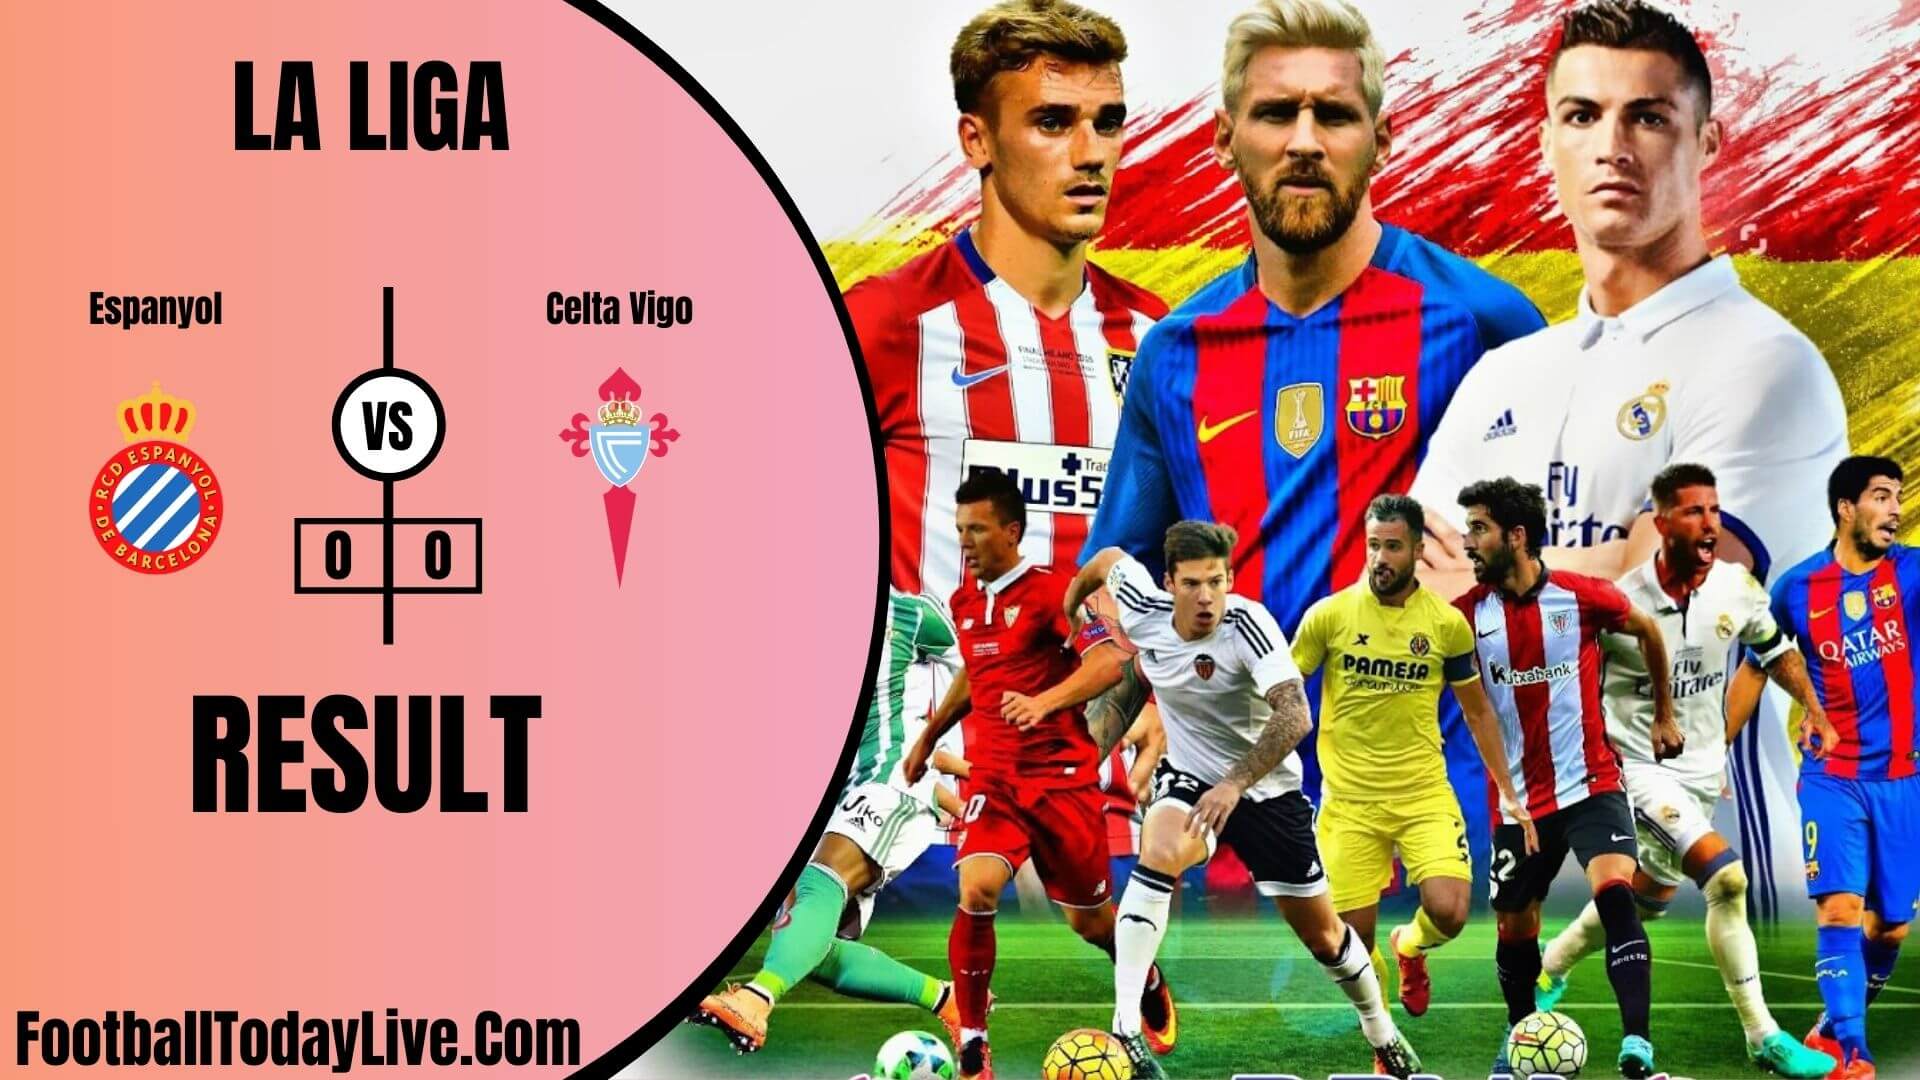 Espanyol Vs Celta Vigo | La Liga Week 38 Result 2020